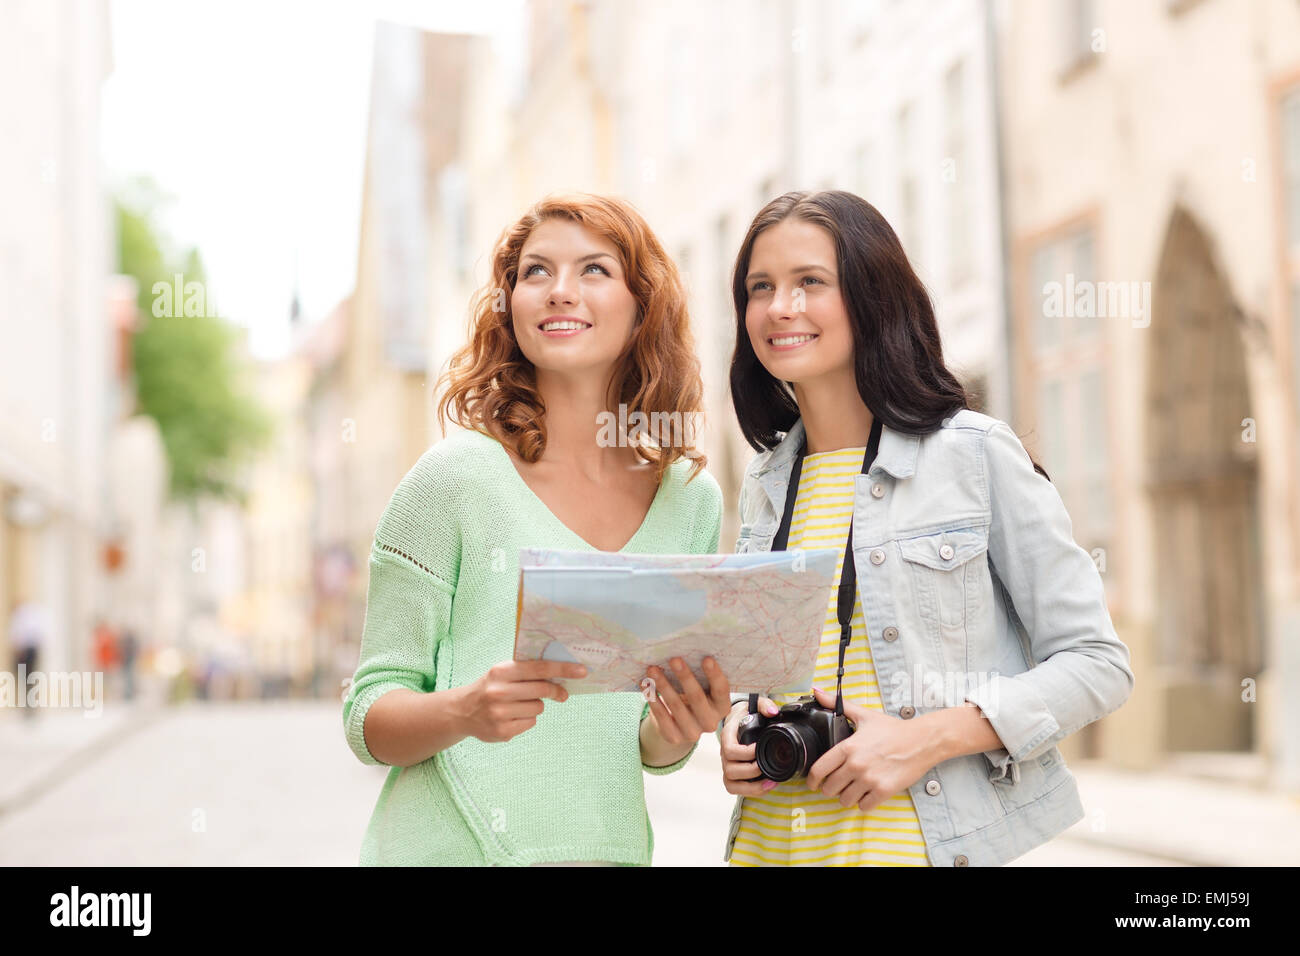 Sorridente ragazze adolescenti con mappa e fotocamera Foto Stock